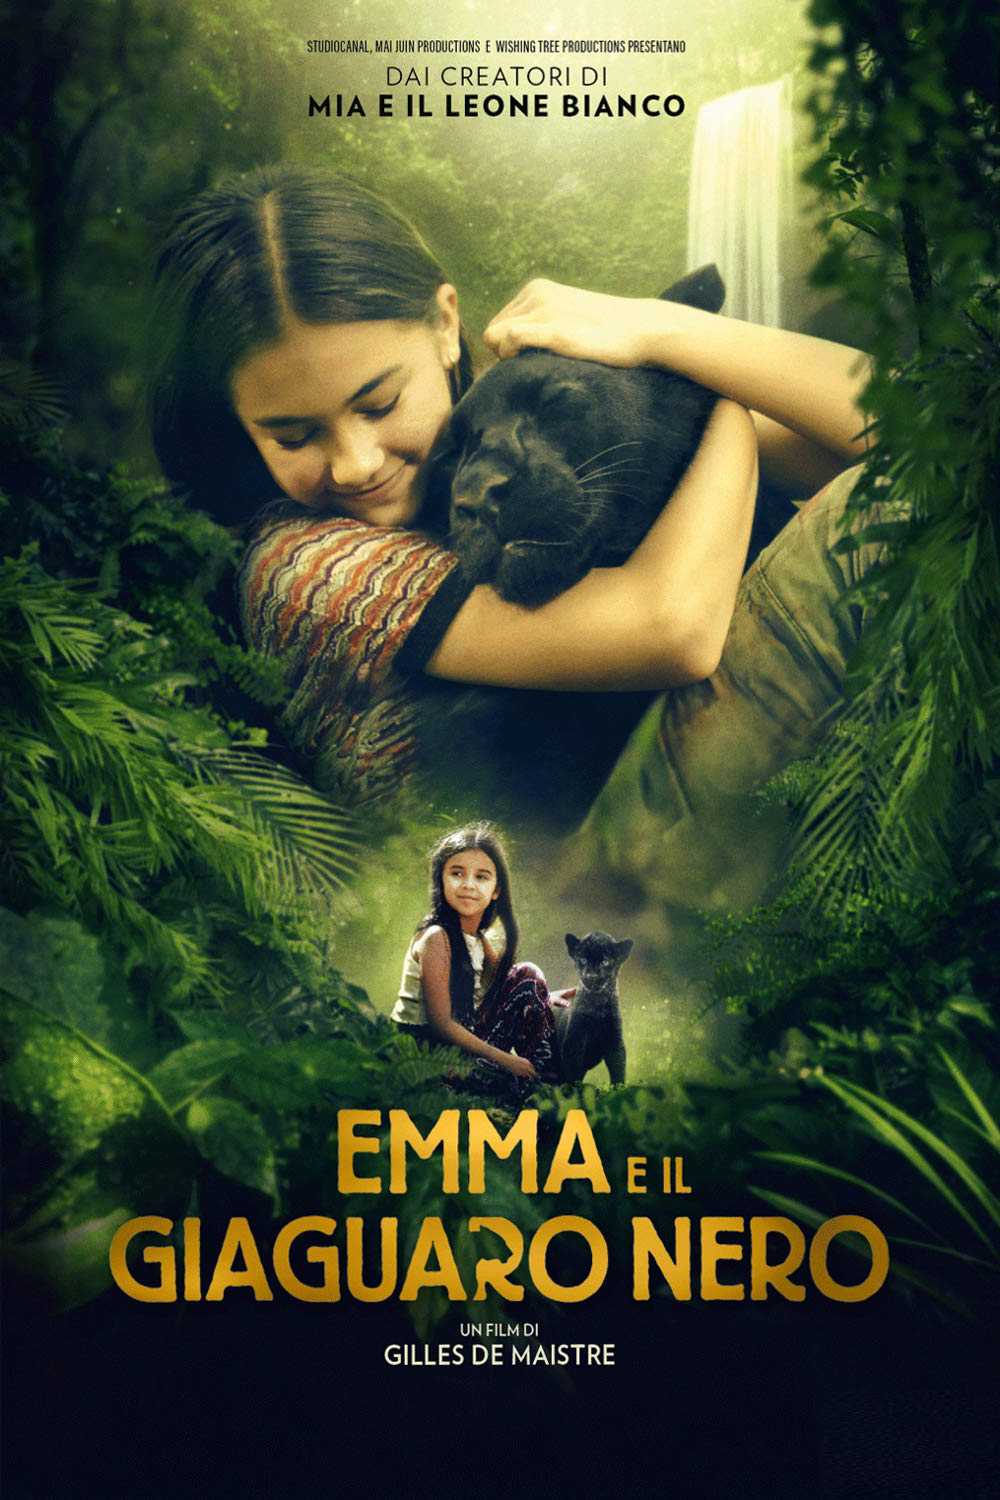 Emma e il giaguaro nero in streaming